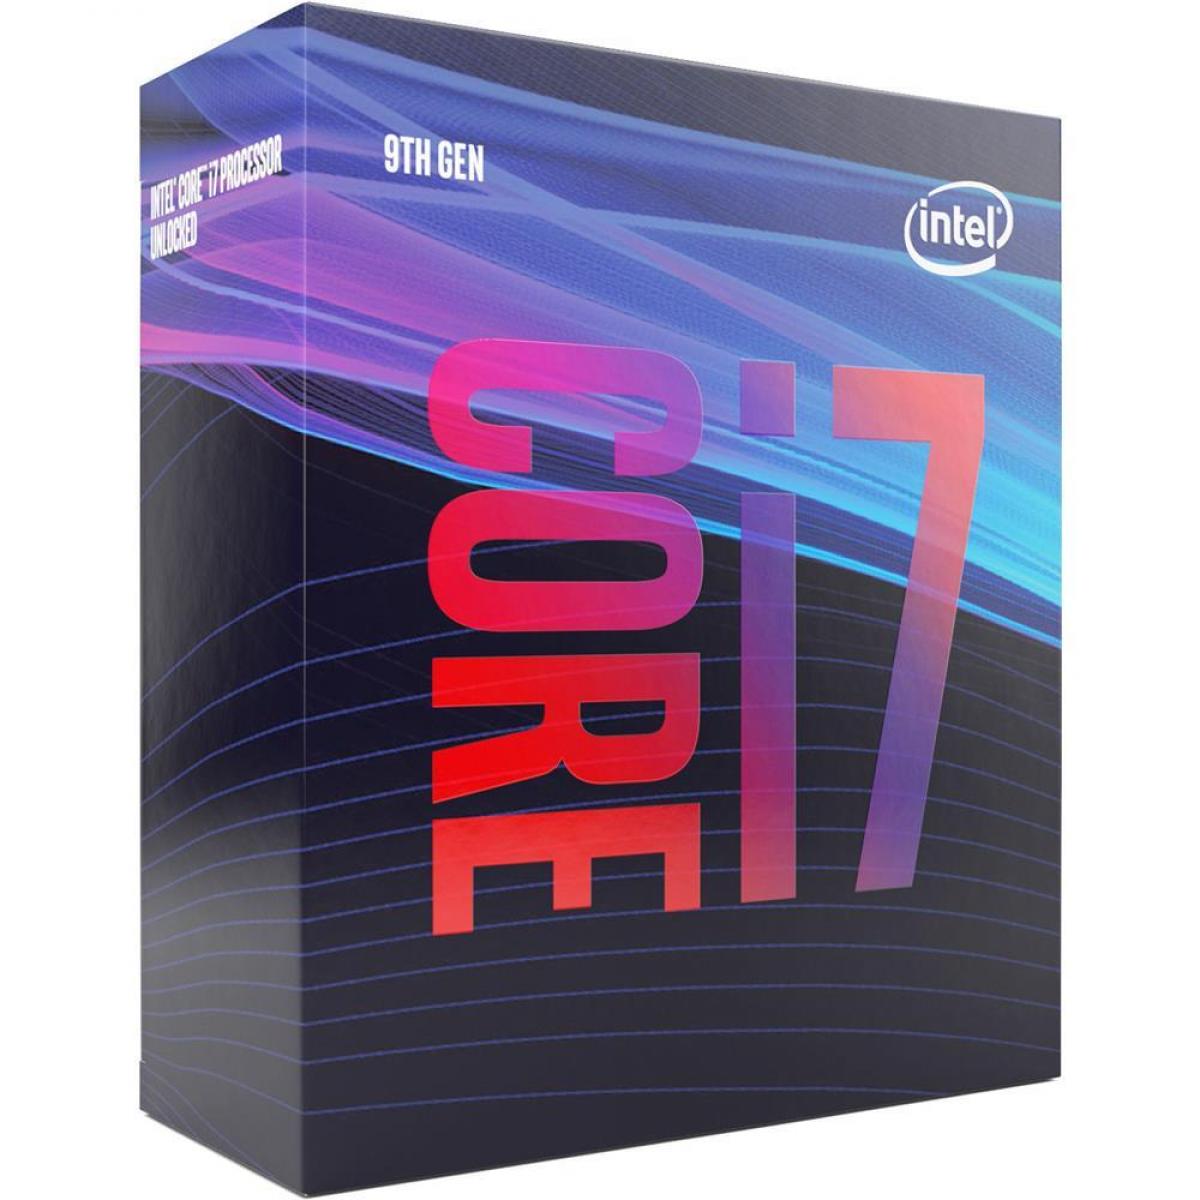 Intel Core i7-9700 Coffee Lake 8-Core 4.7GHz 12MB